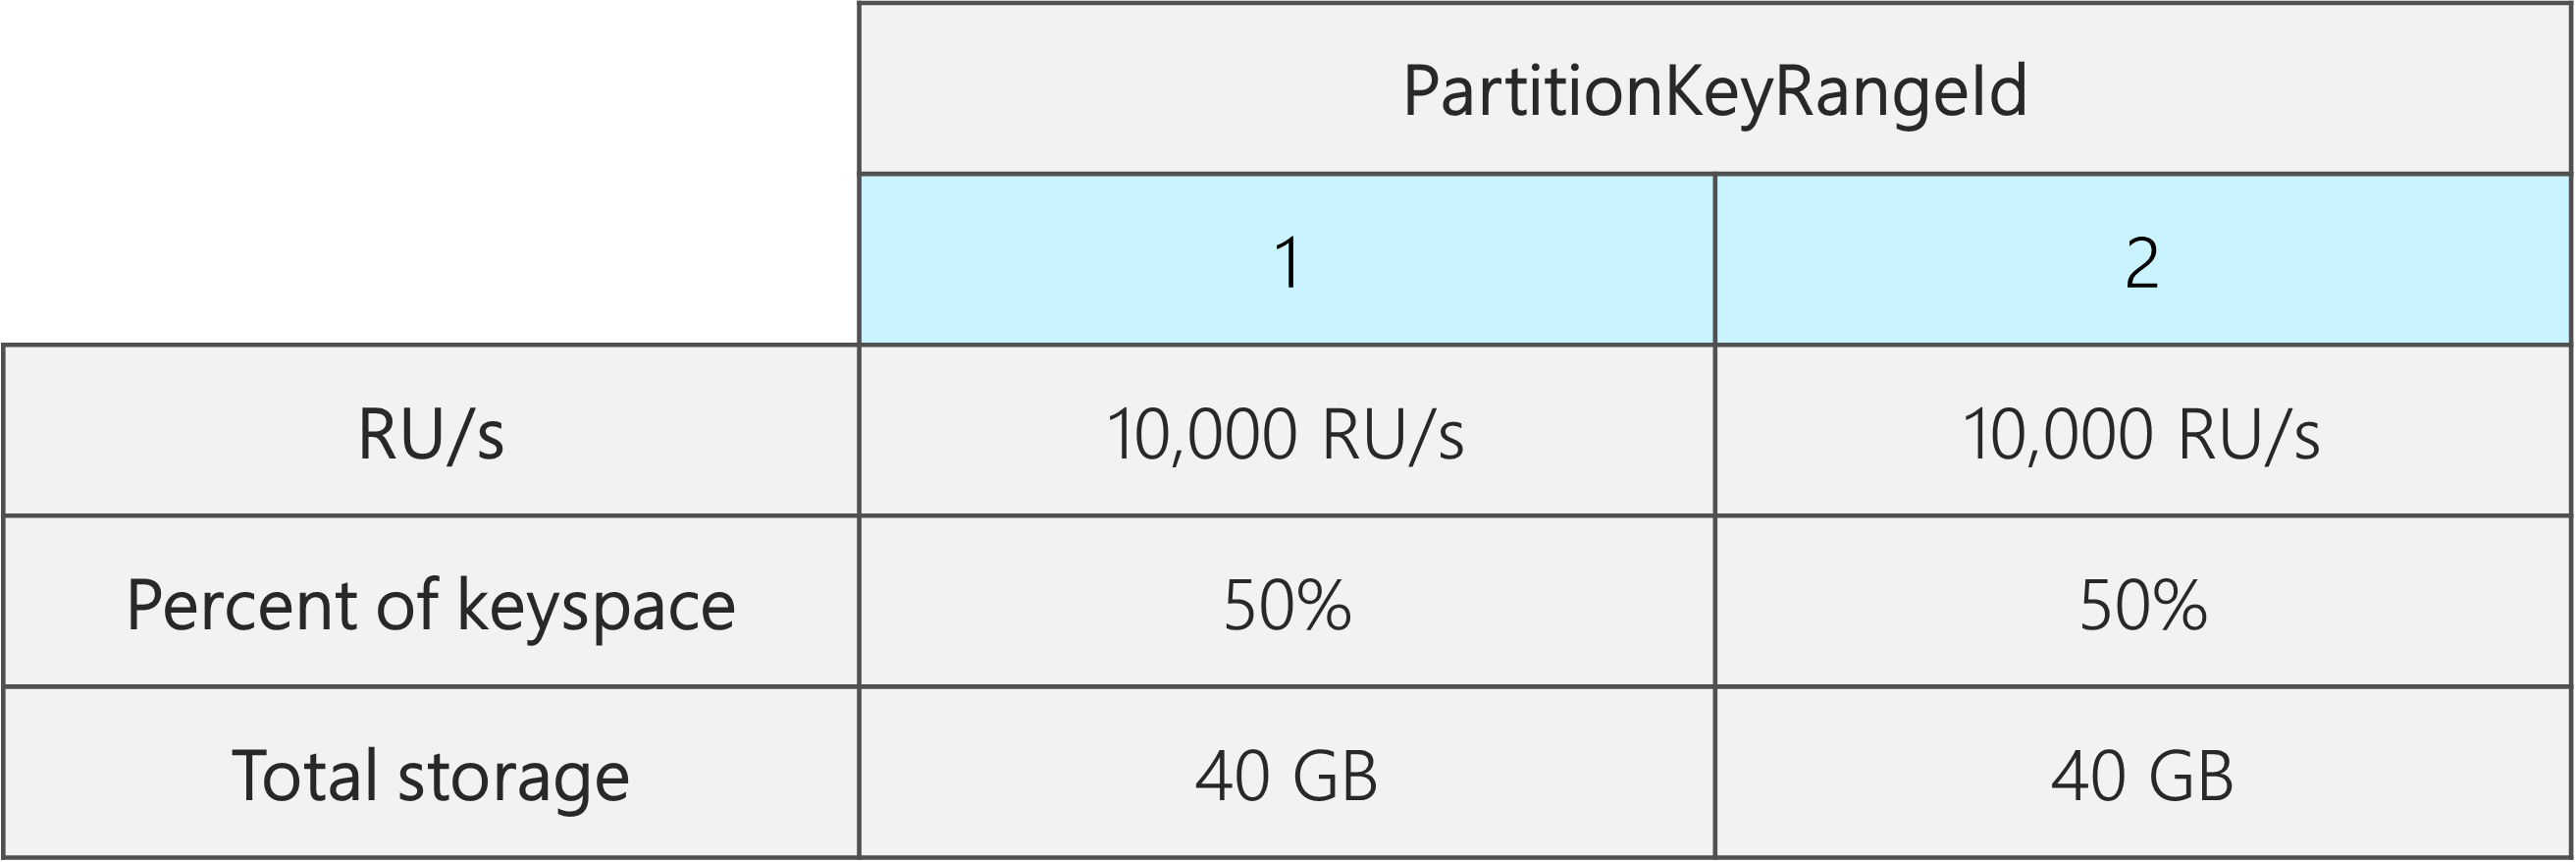 两个 PartitionKeyRangeId，每个都具有 10,000 RU/秒、40 GB 和 50% 的总键空间